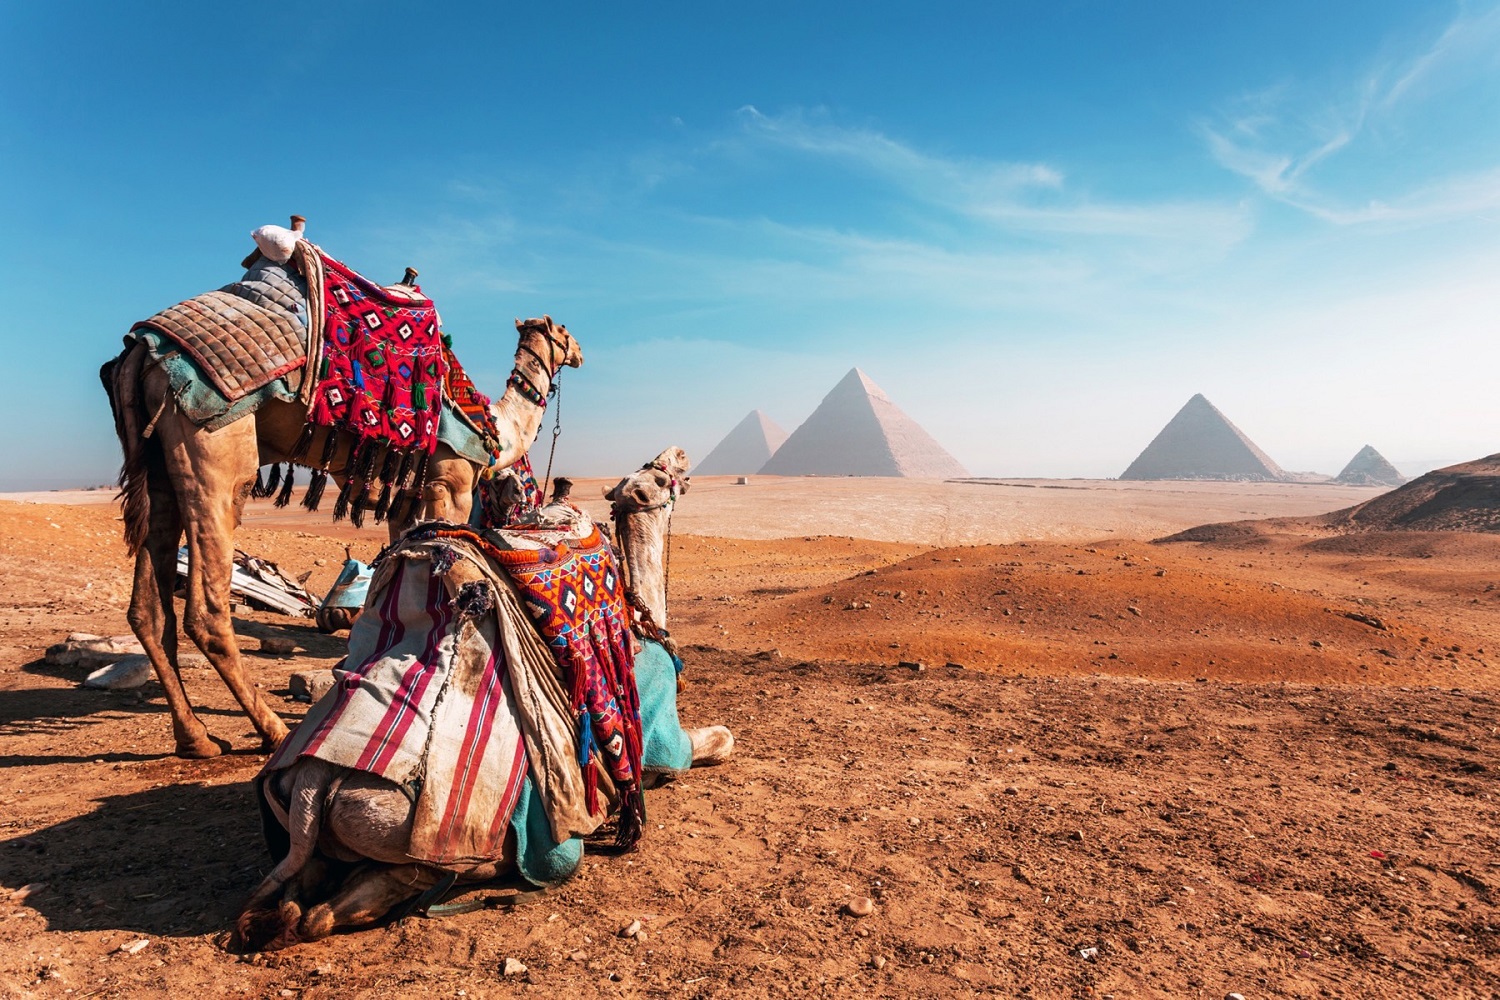 Populiariausi mitai apie Egiptą – kurie iš jų yra tiesa?